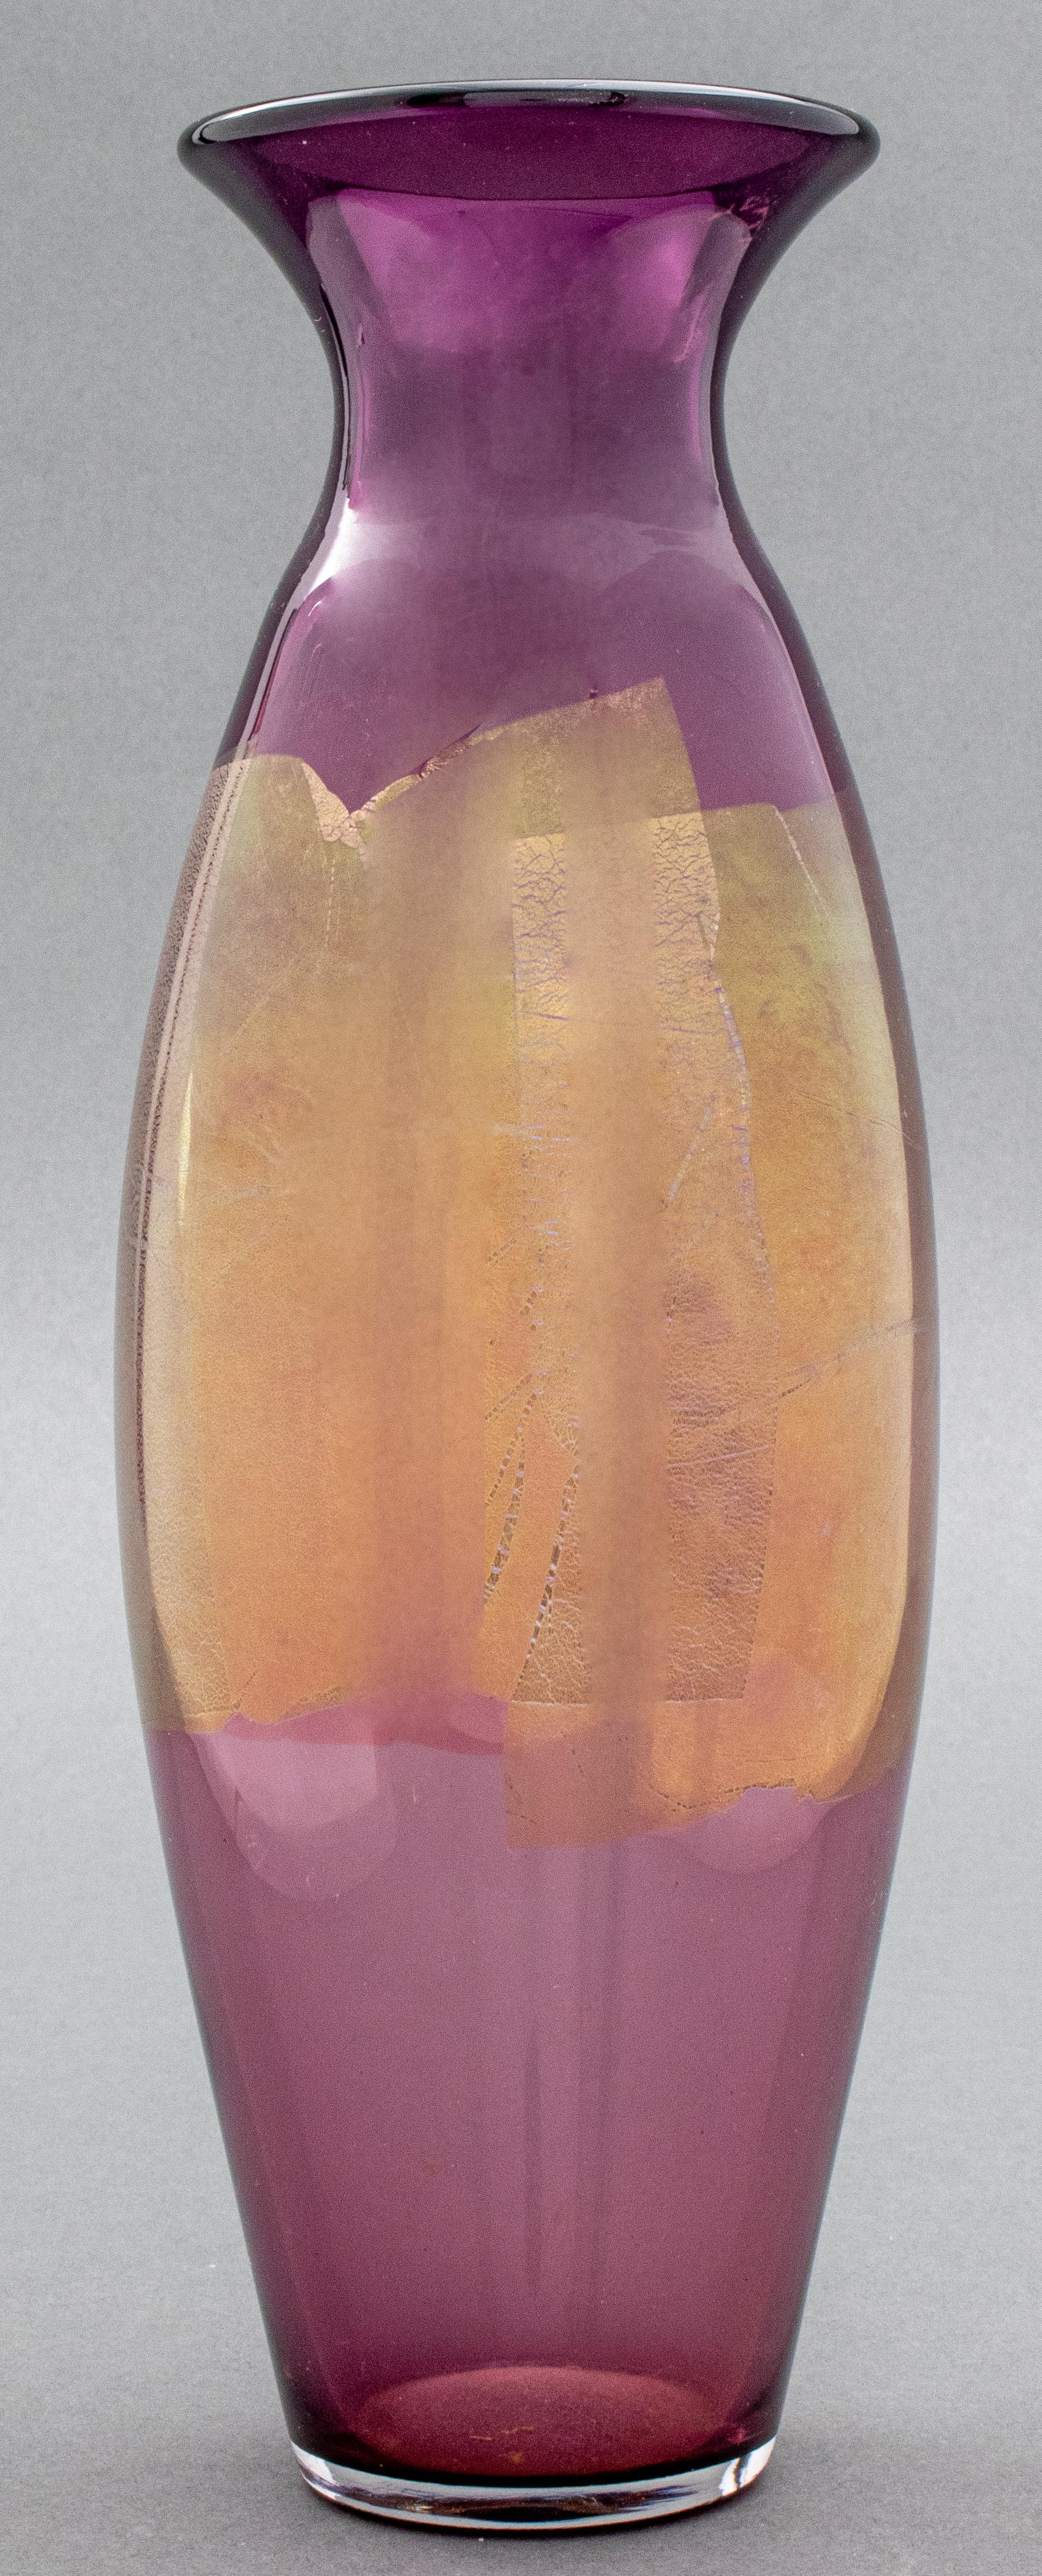 Jeff Zimmerman (Amerikaner, geb. 1968) für Tiffany & Company violette Glasvase mit Blattgolddekoration, die den Körper umgibt, eingeschnittene Signatur auf der Unterseite. 12.75